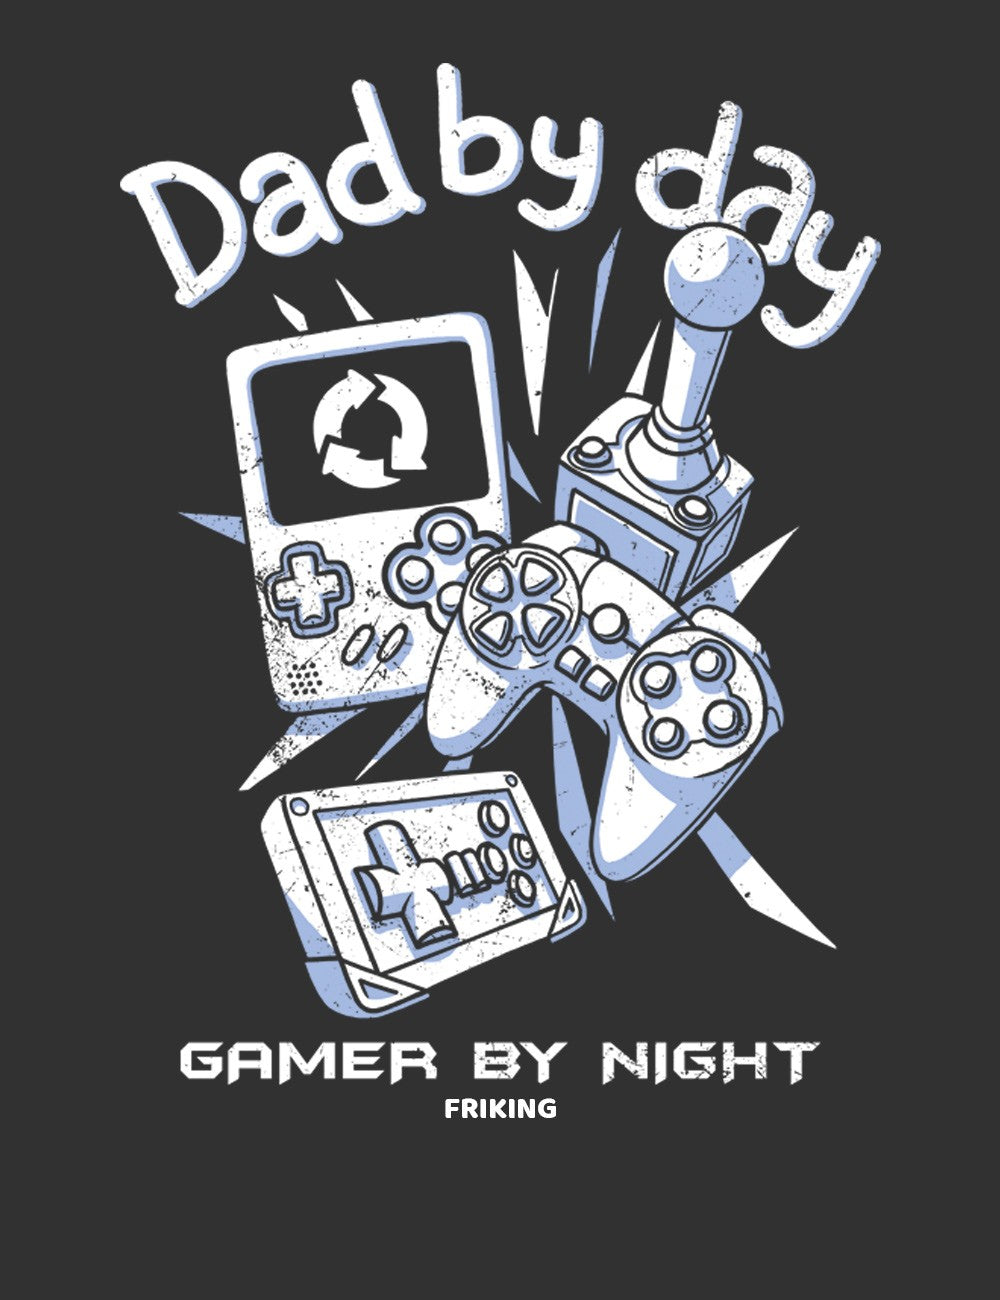 Daddy by day Gamer by night